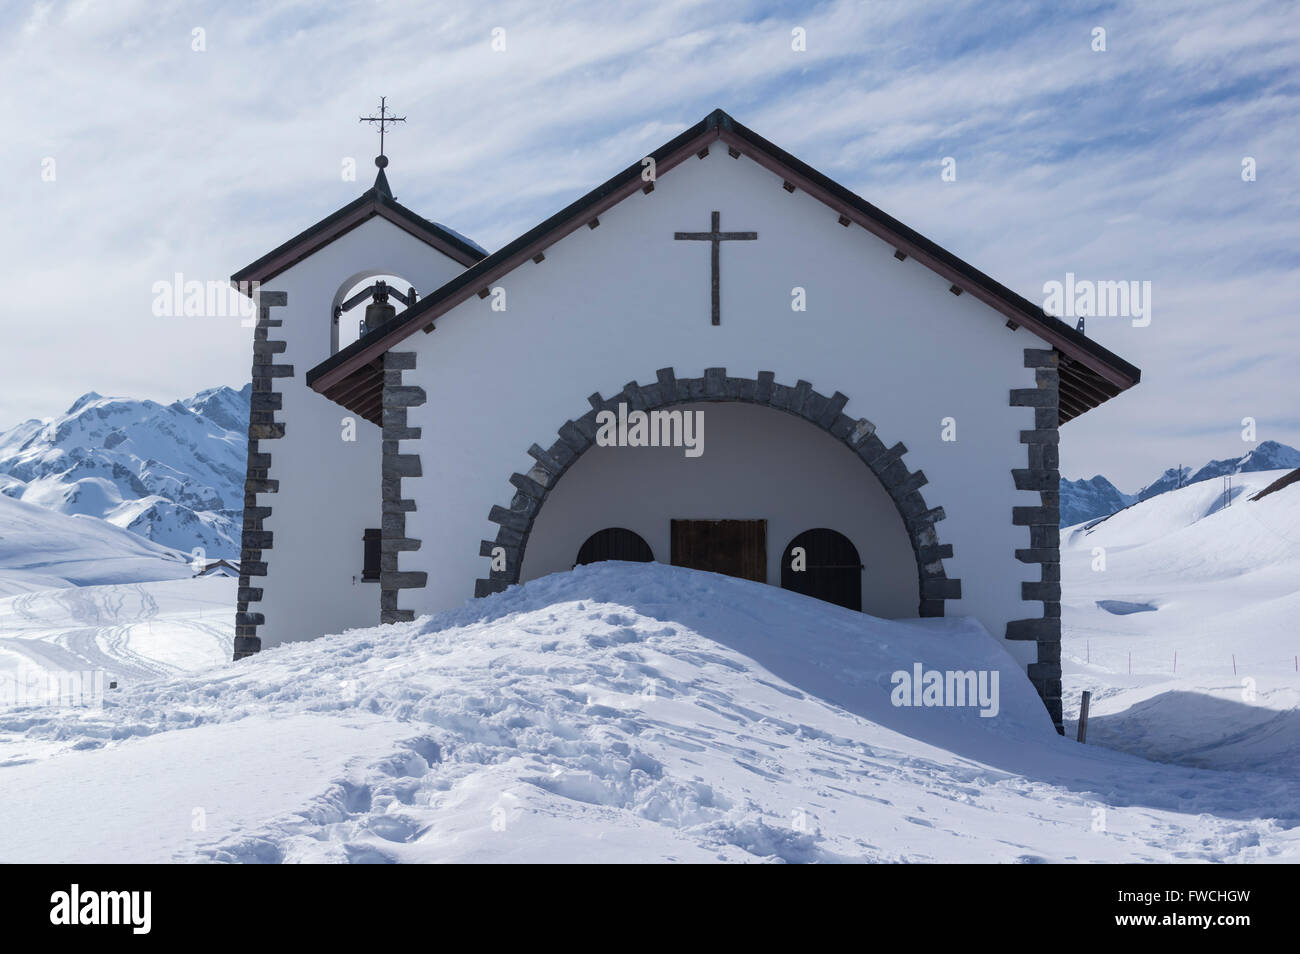 Eingang der Kapelle in den Schweizer Alpen durch Schnee blockiert. Tannalp, Melchsee-Frutt, Schweiz. Berge im Hintergrund. Stockfoto